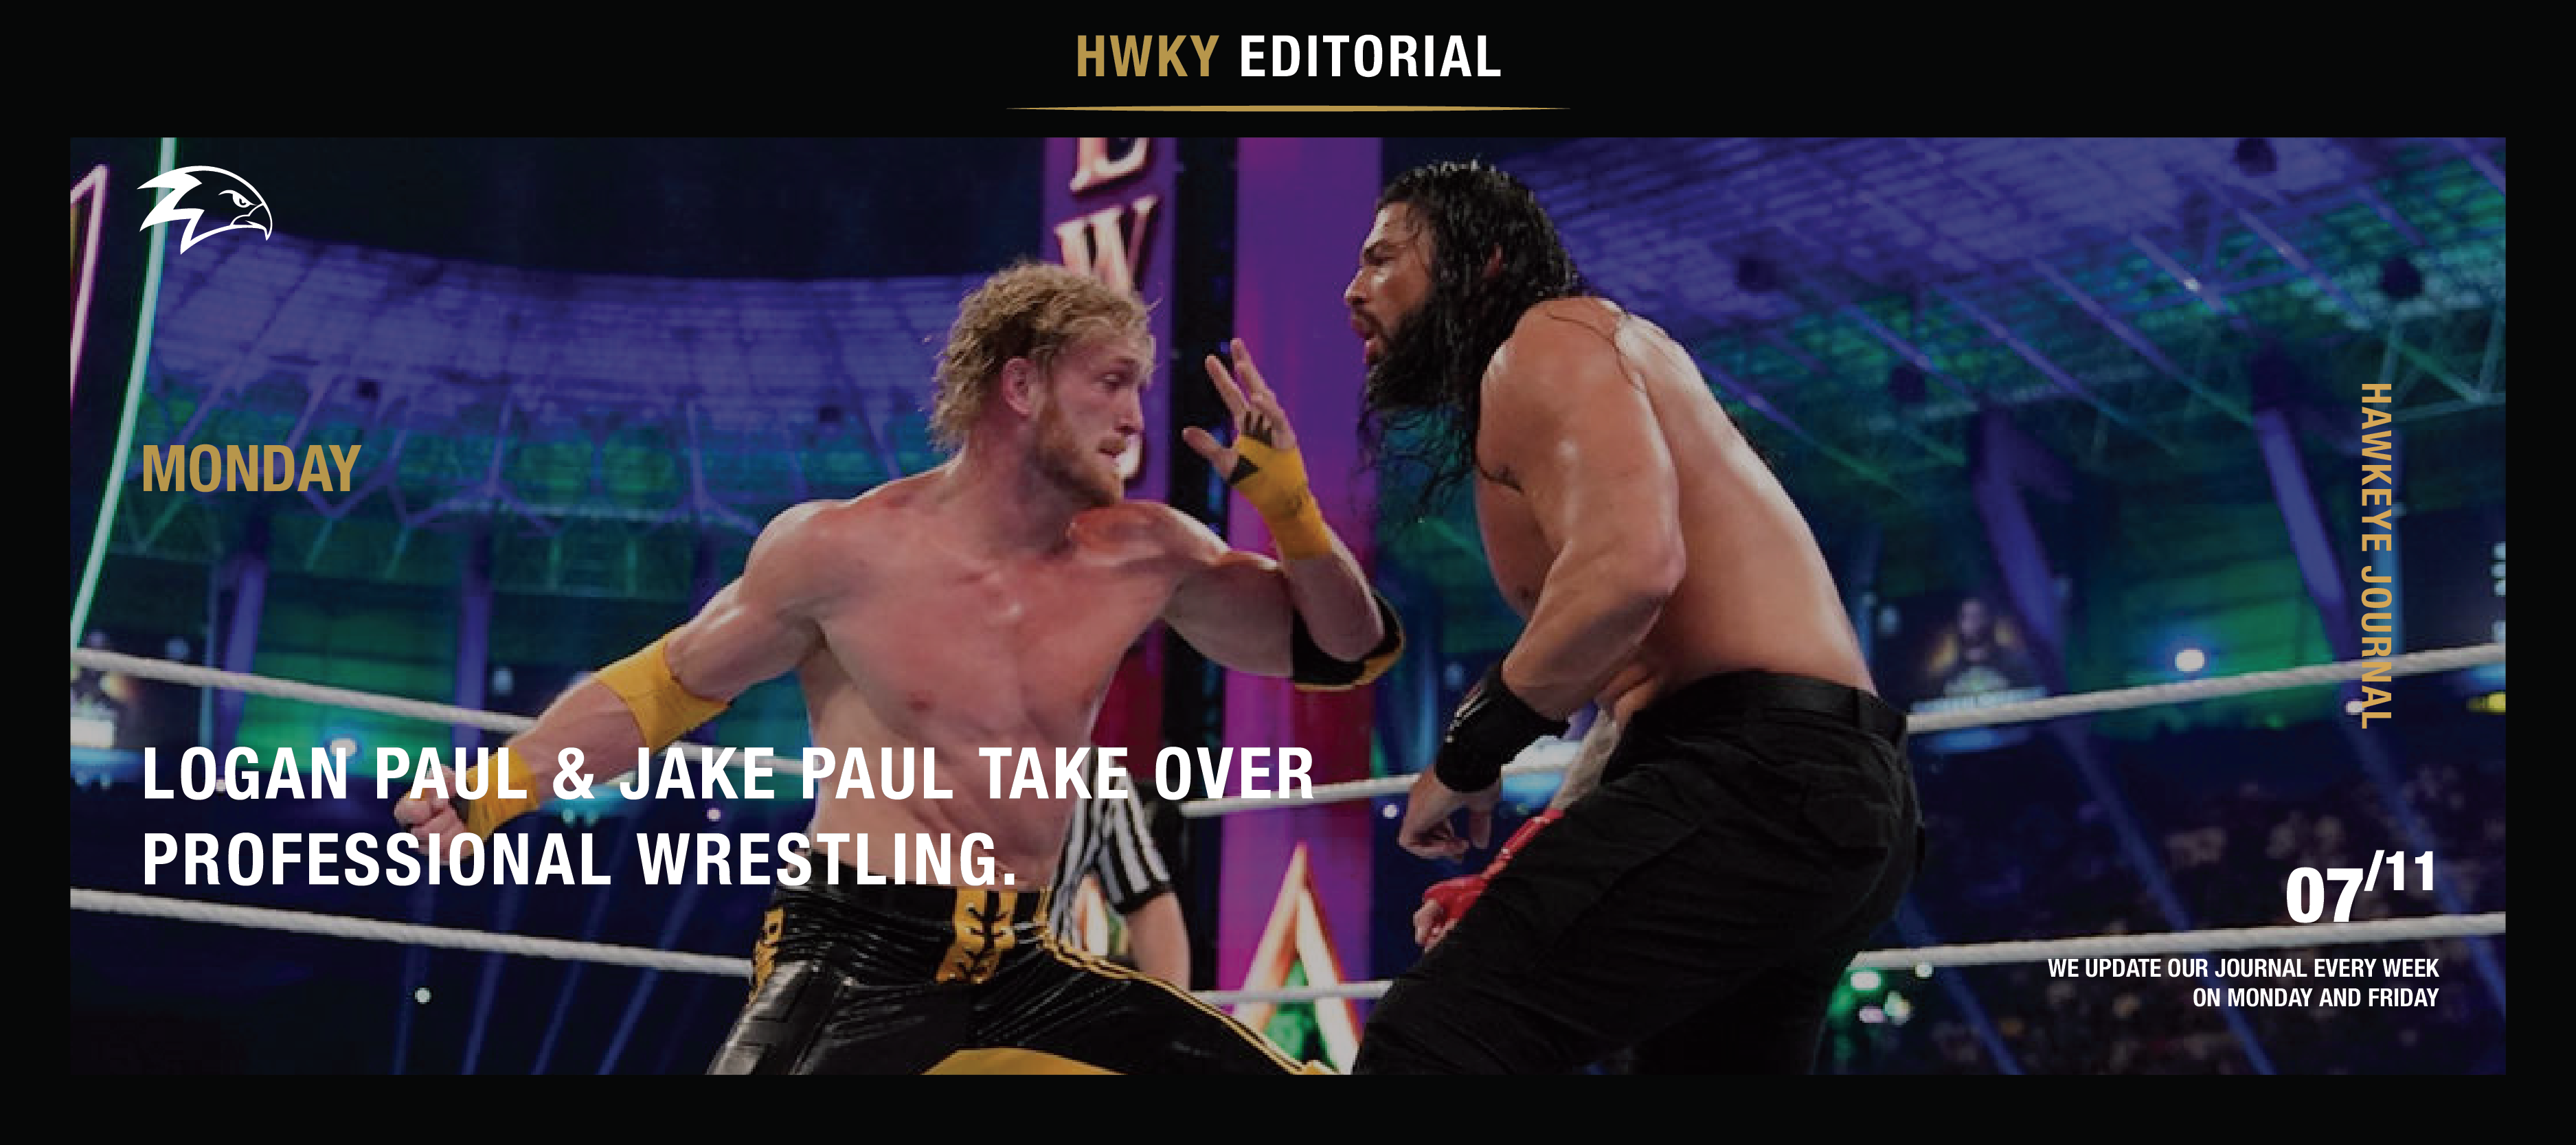 Logan Paul & Jake Paul Take Over Professional Wrestling.